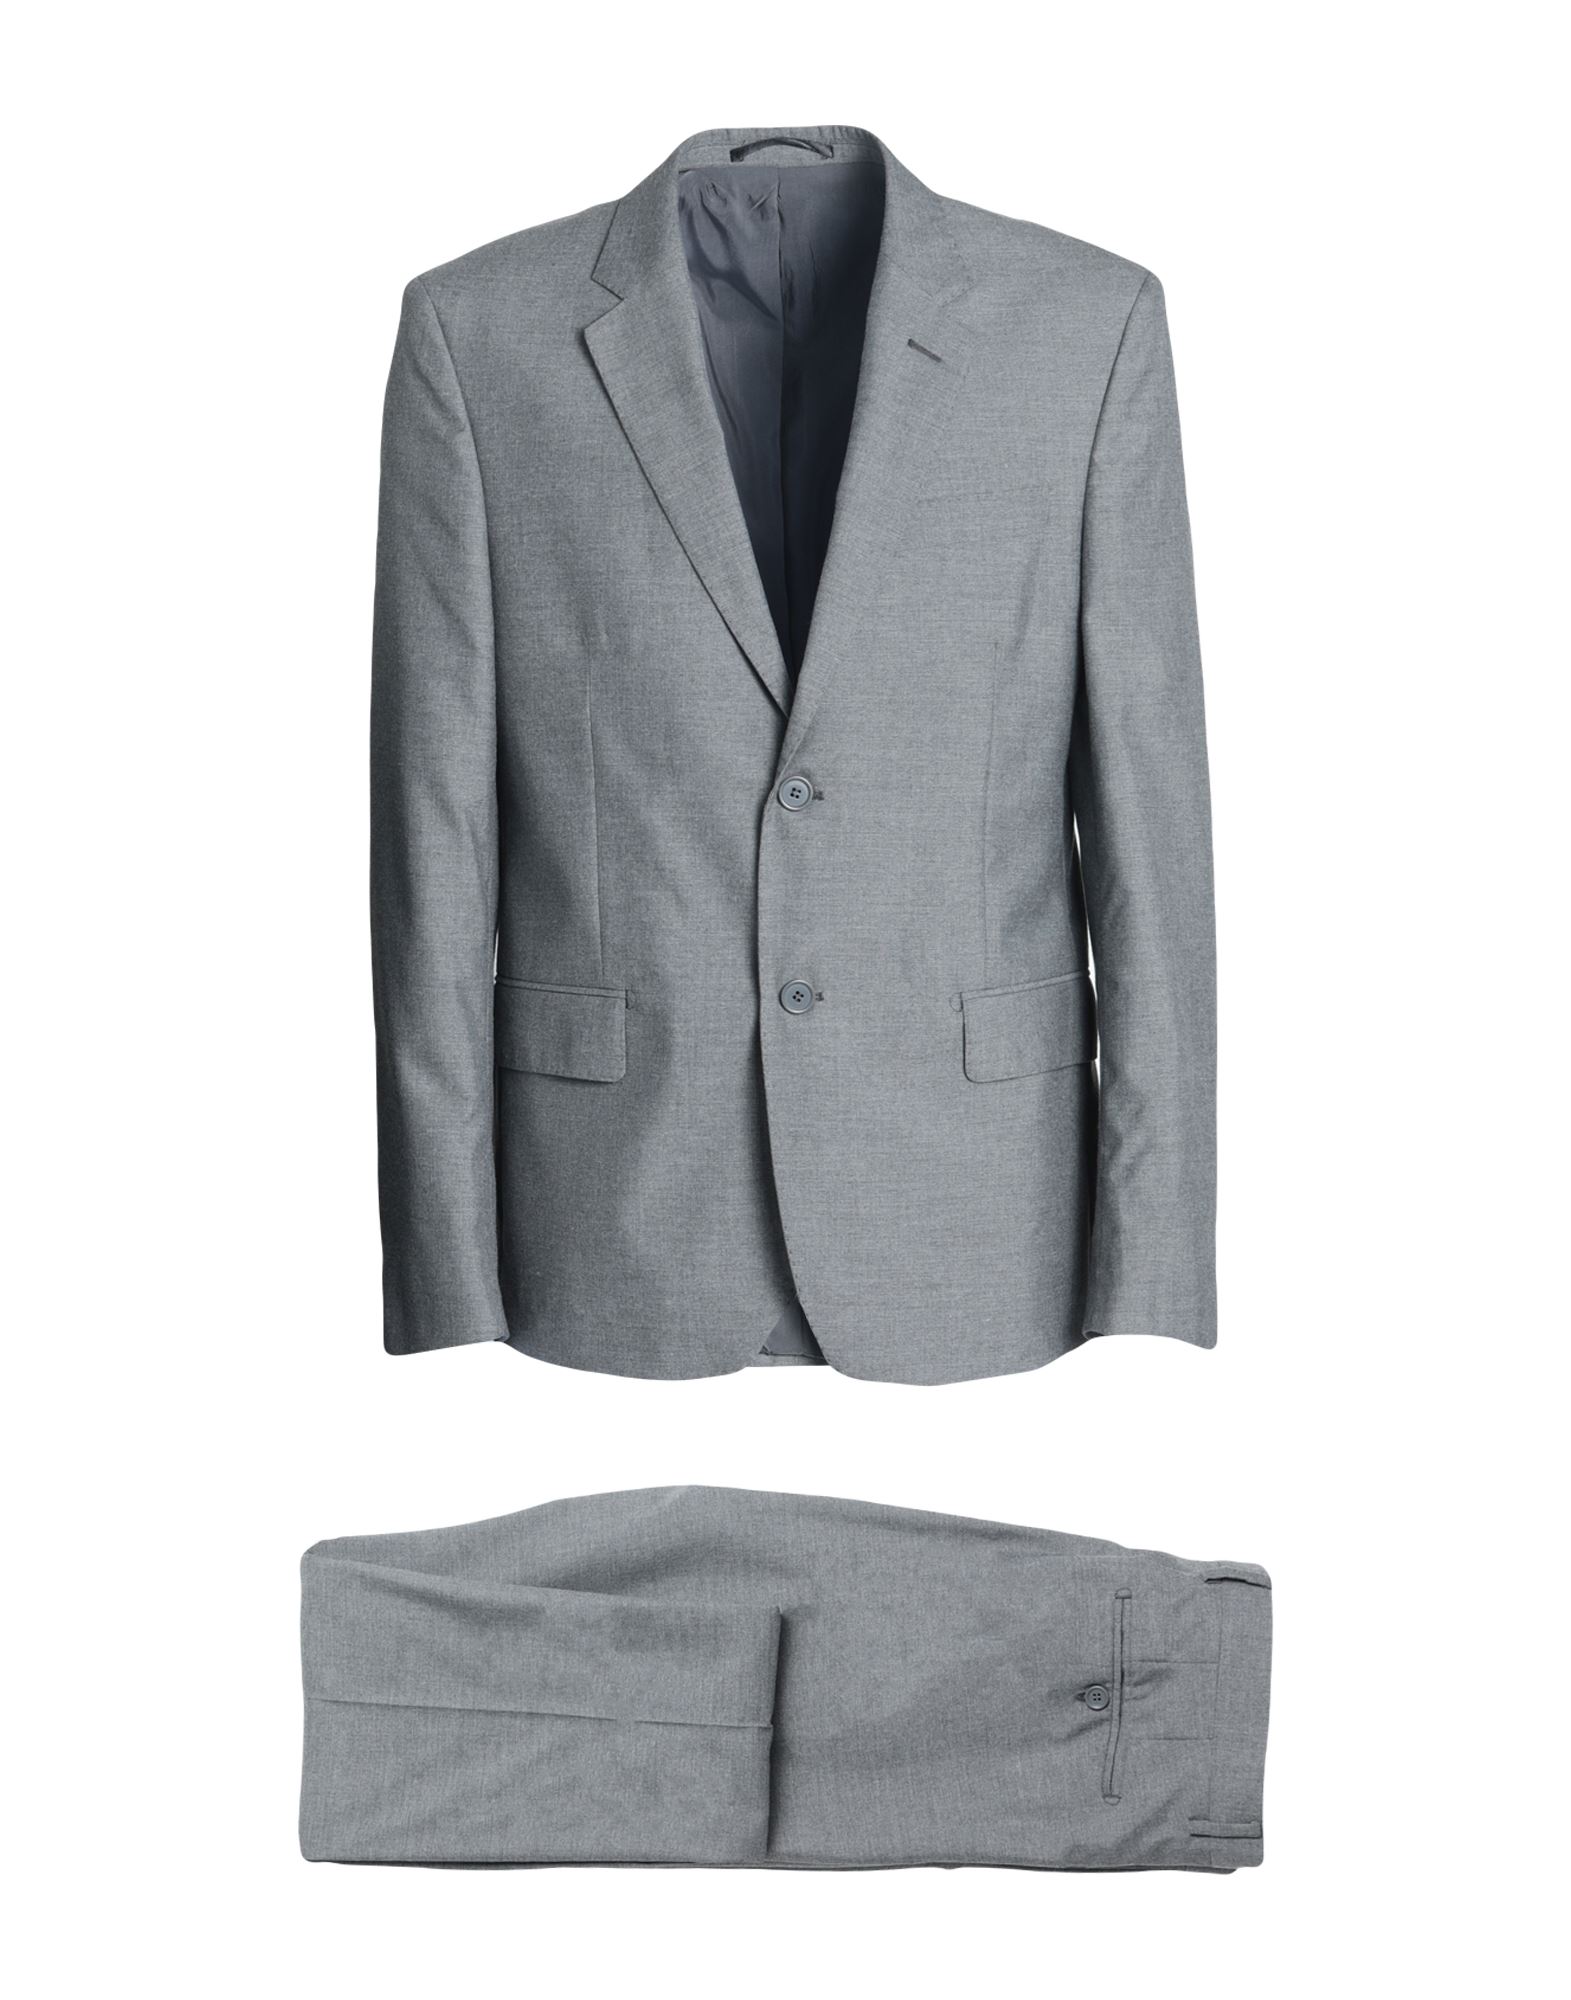 Alv By Alviero Martini Suits In Grey